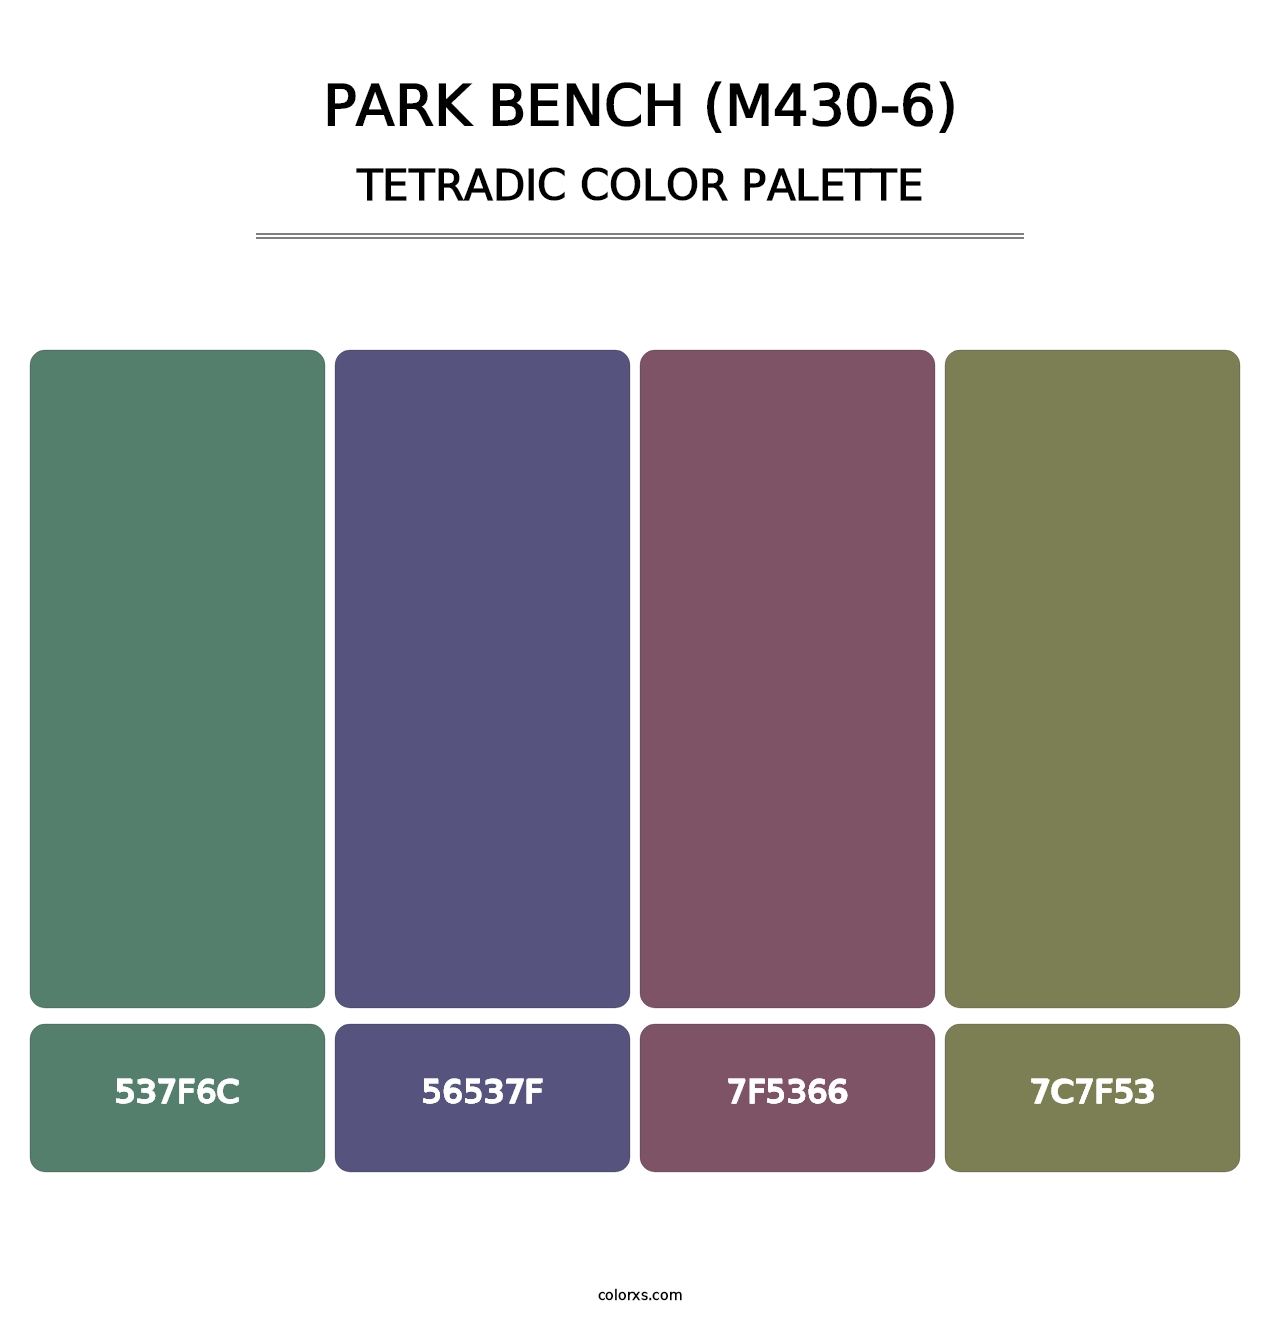 Park Bench (M430-6) - Tetradic Color Palette